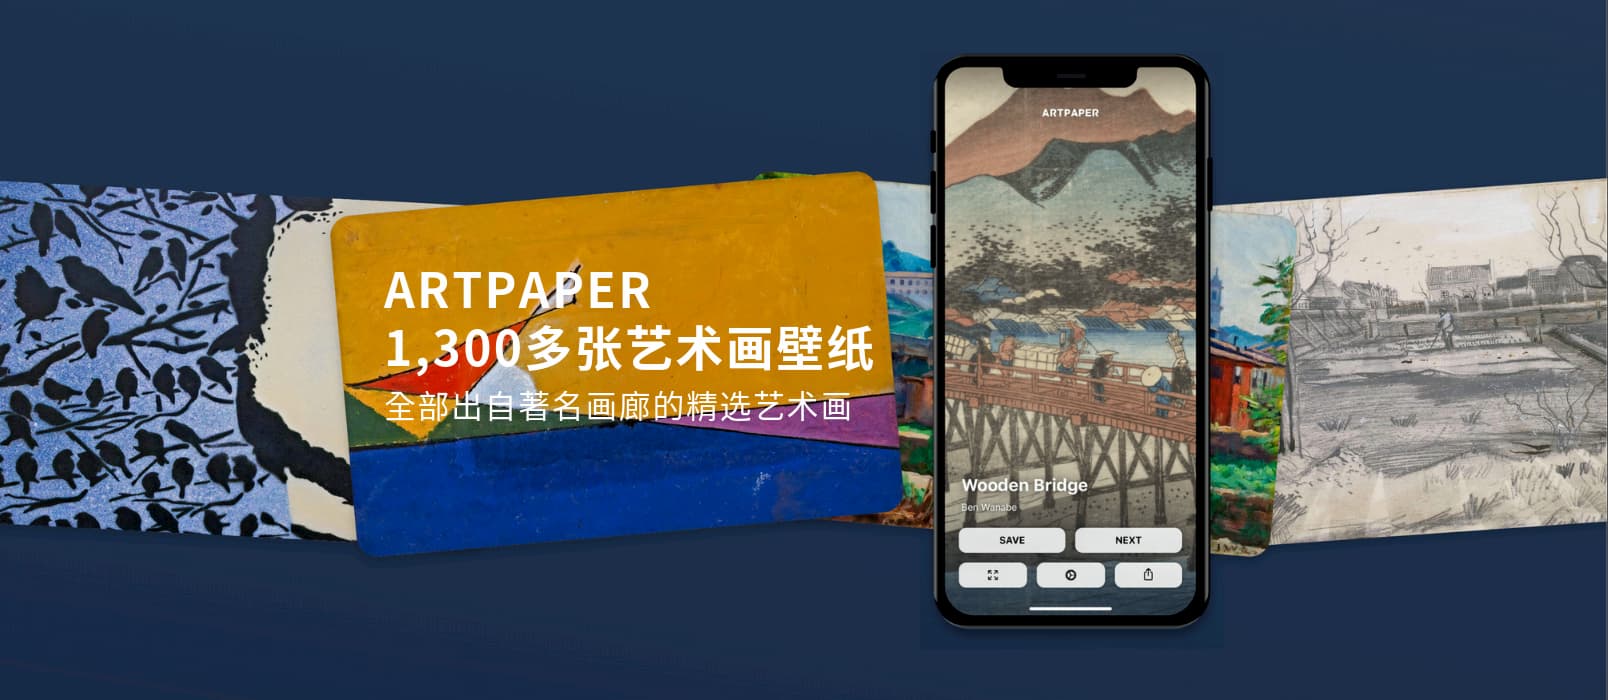 拥有 1300 多张 5K 高分辨率艺术画壁纸的应用 Artpaper 发布 iOS 正式版 1